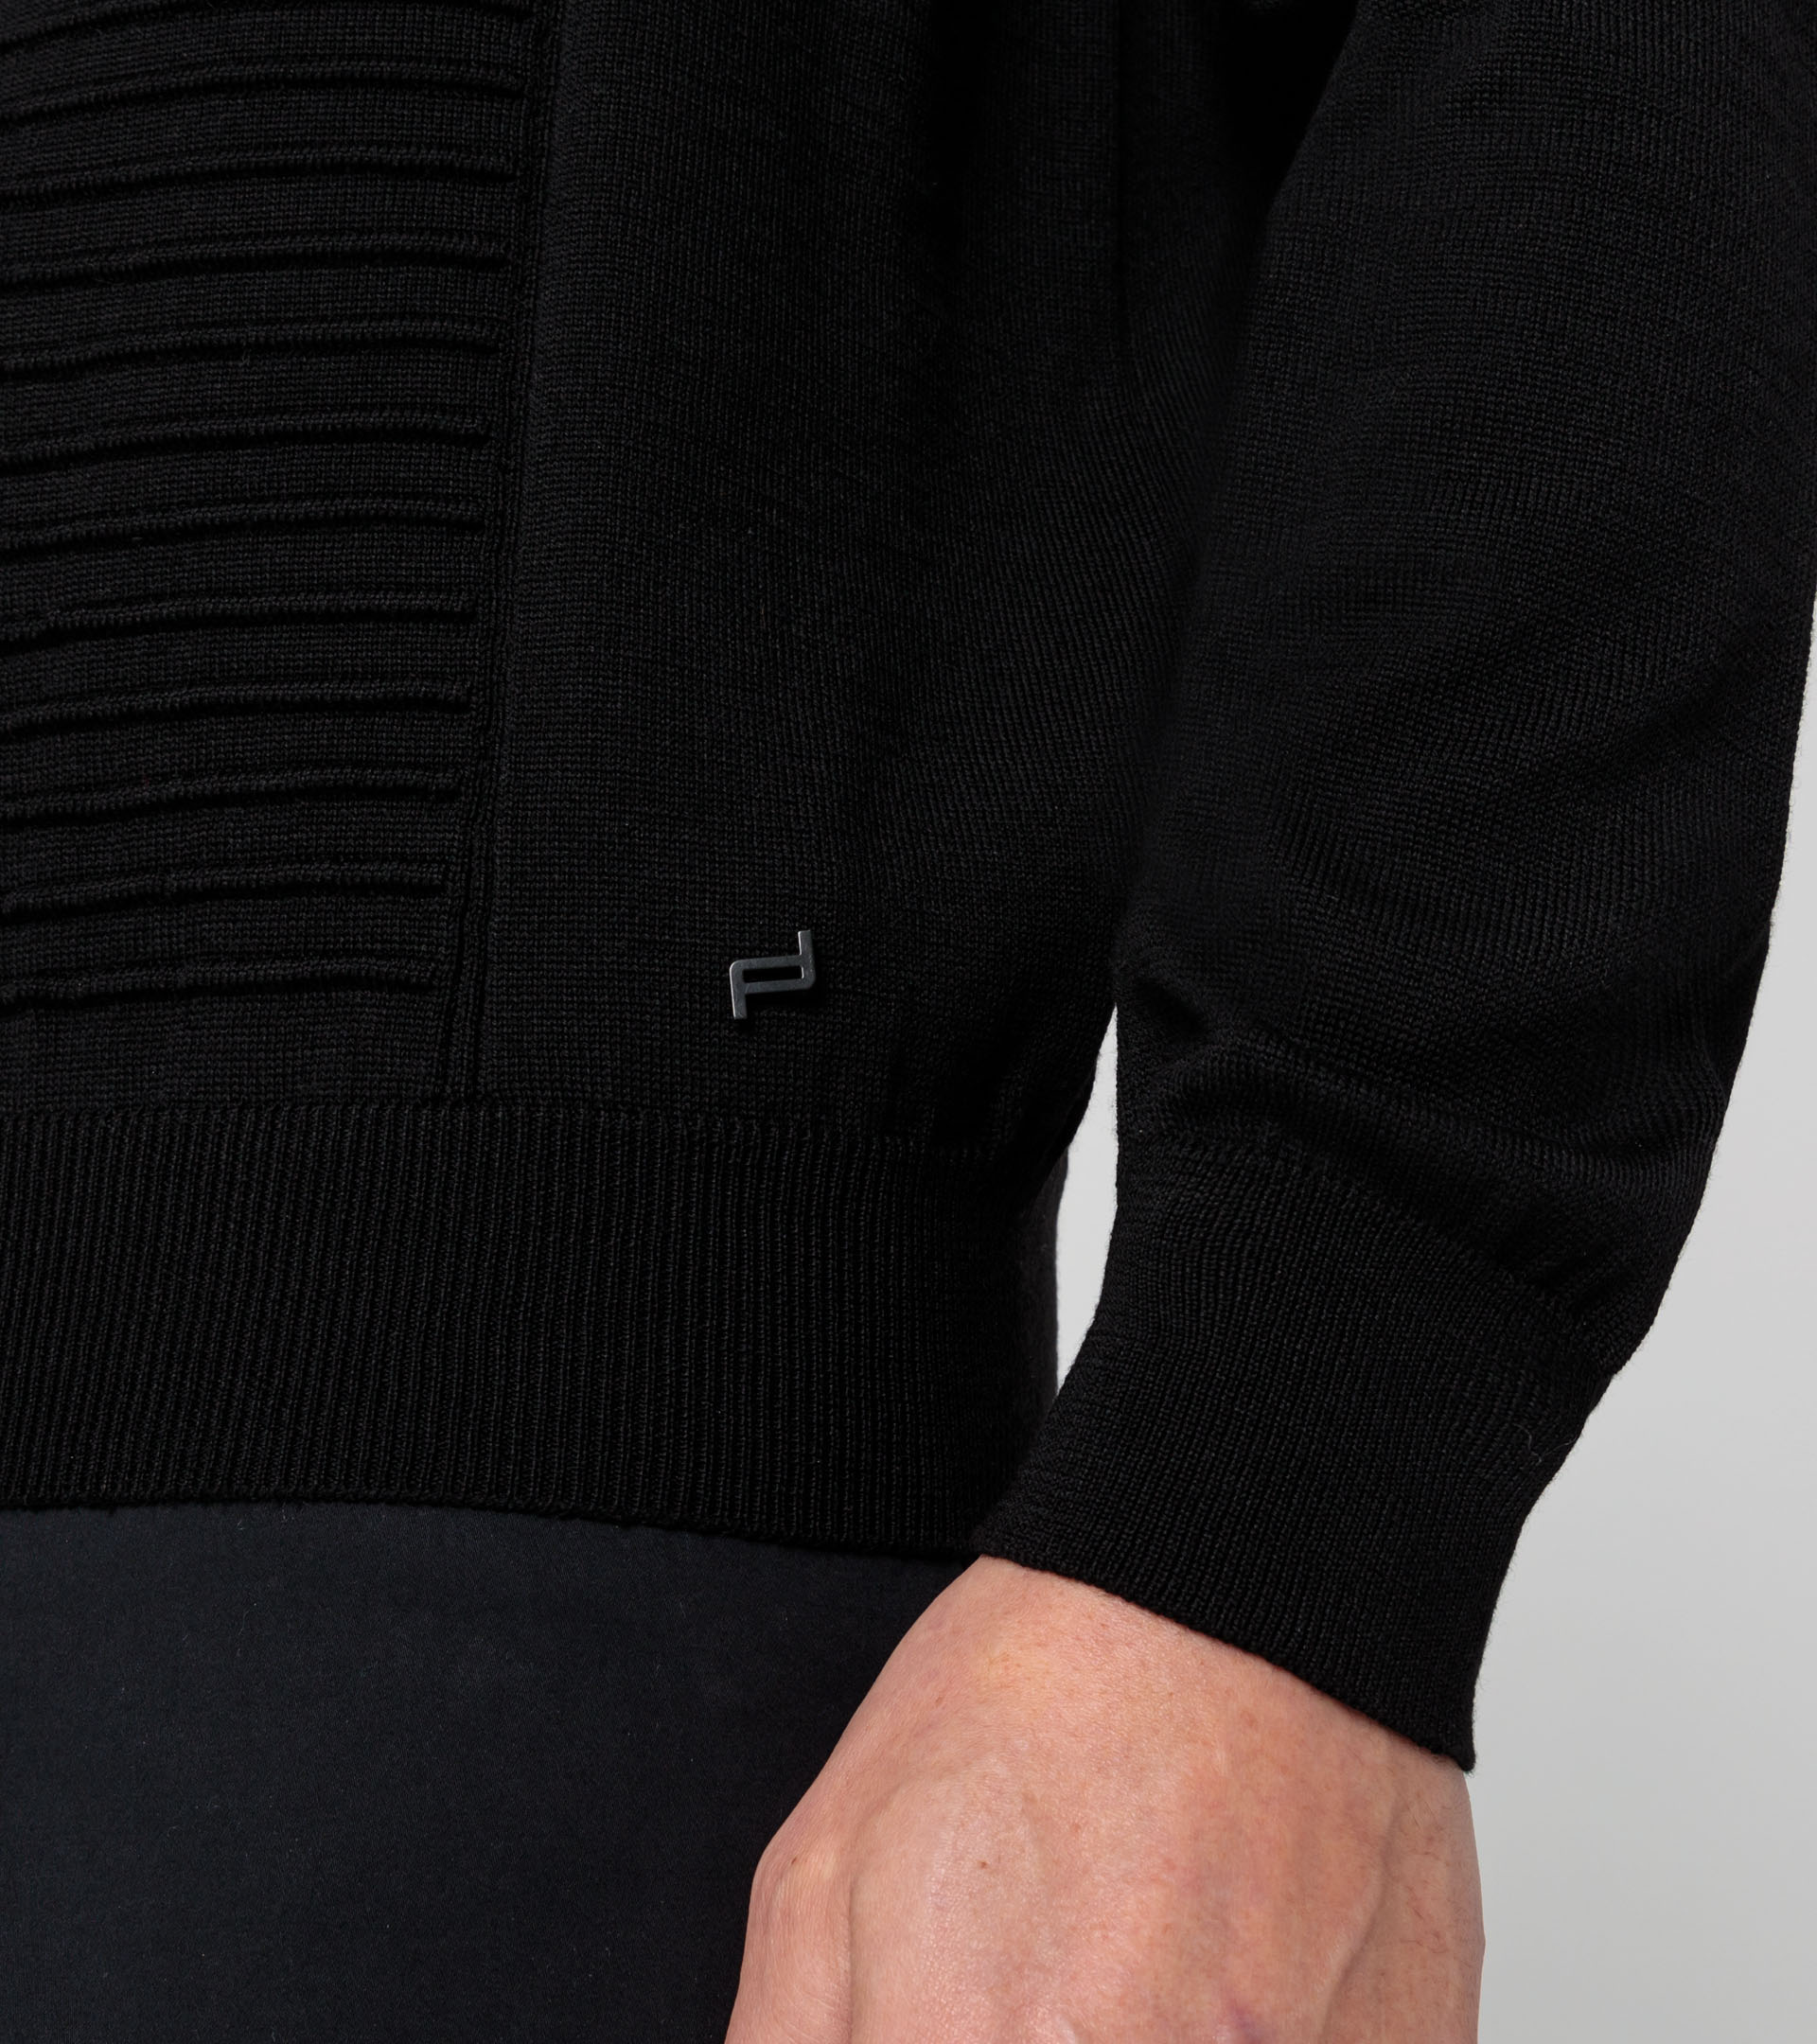 Athleisure sweater - Designer Sweaters for Men | Porsche Design ...